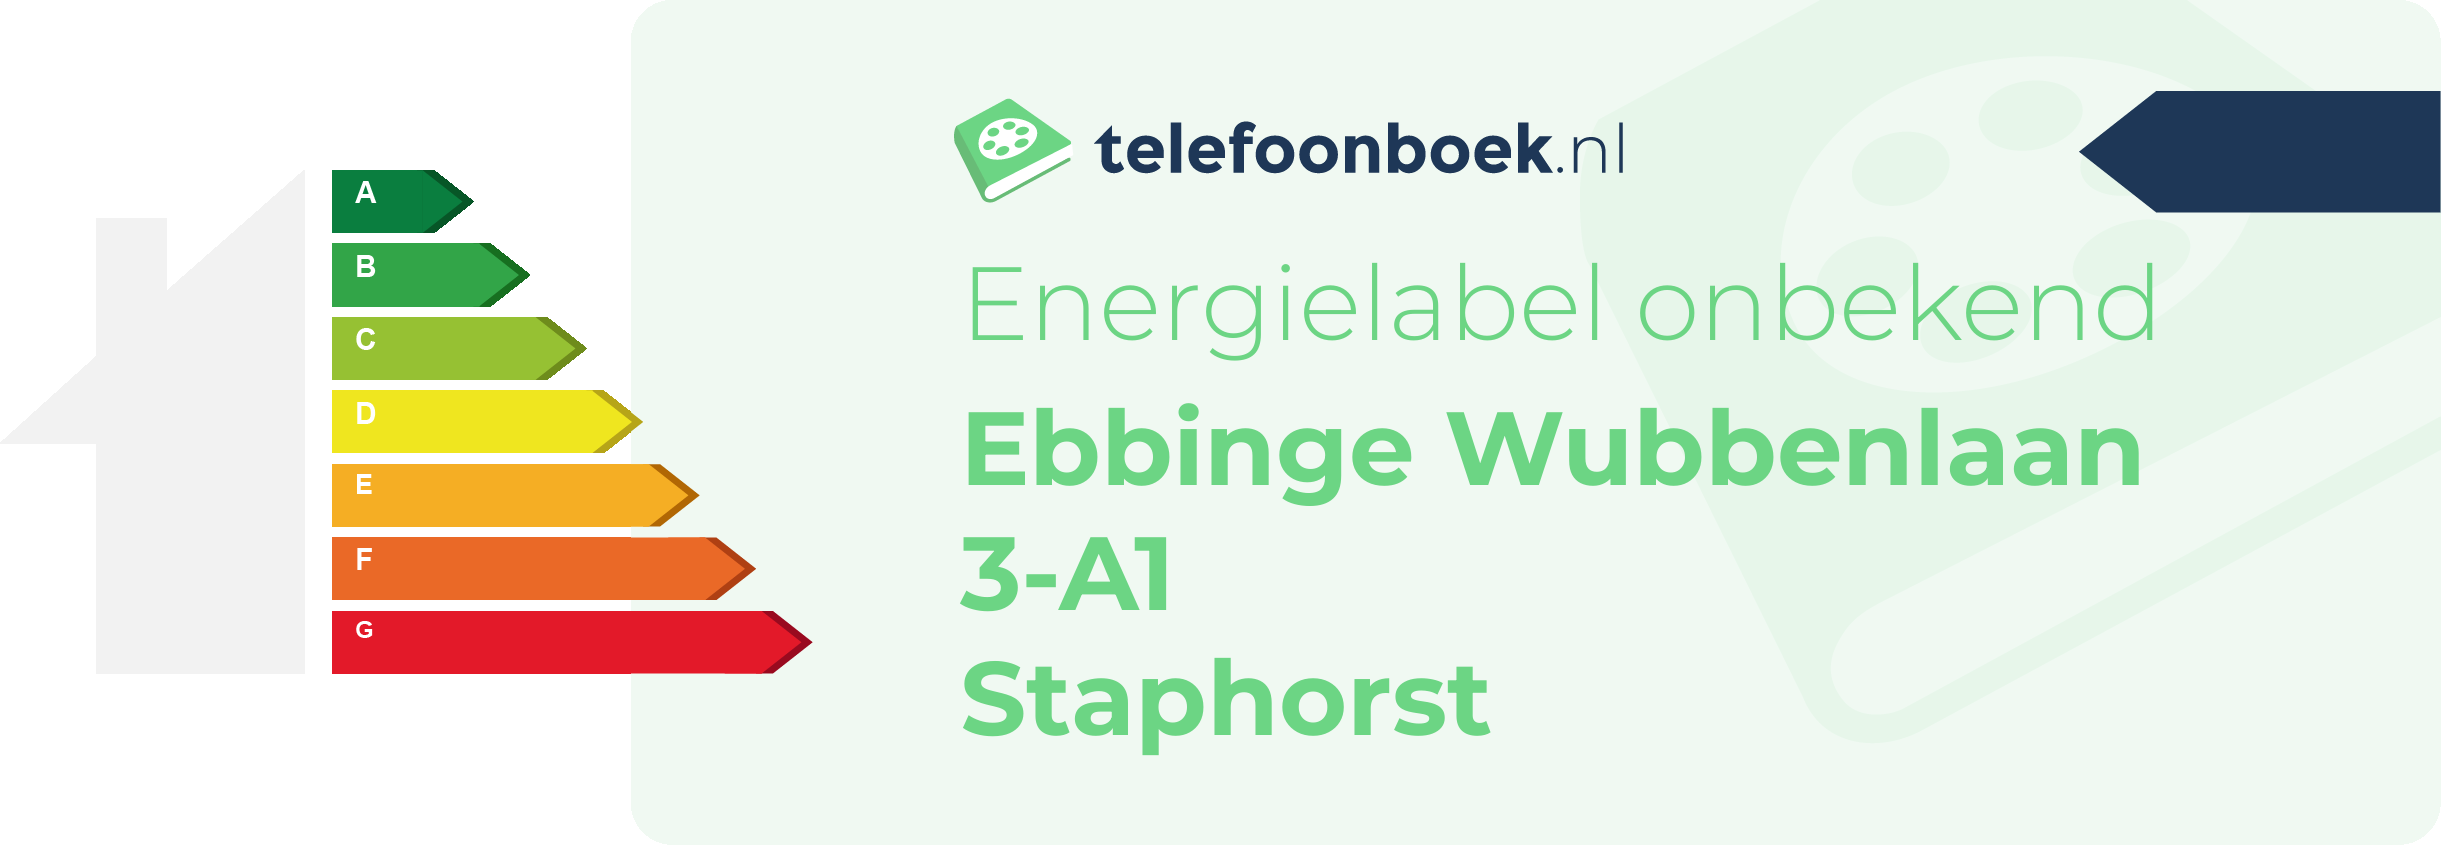 Energielabel Ebbinge Wubbenlaan 3-A1 Staphorst